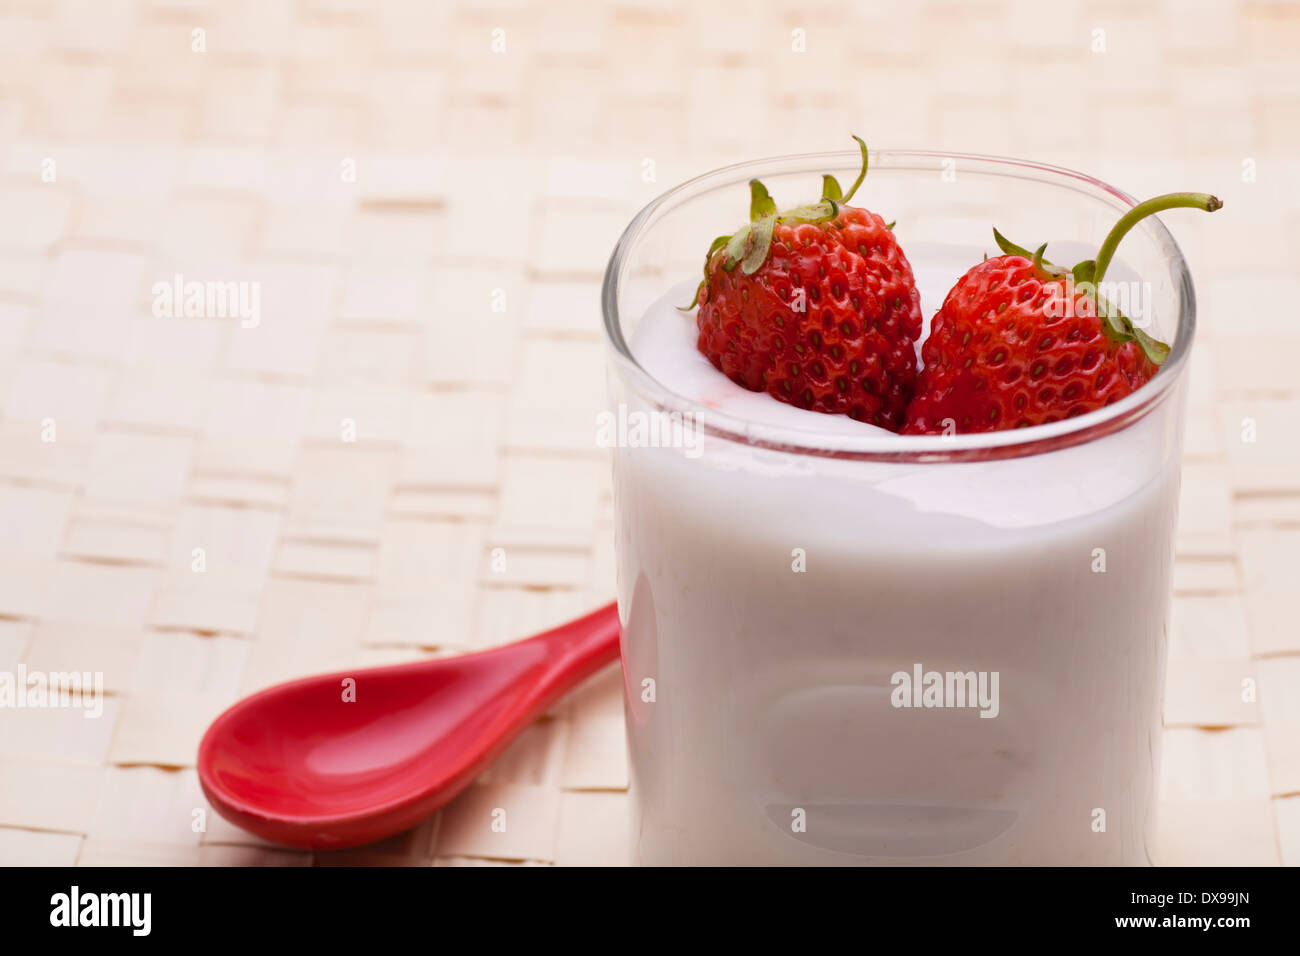 Frische Erdbeeren auf weißem Joghurt Stockfotografie - Alamy